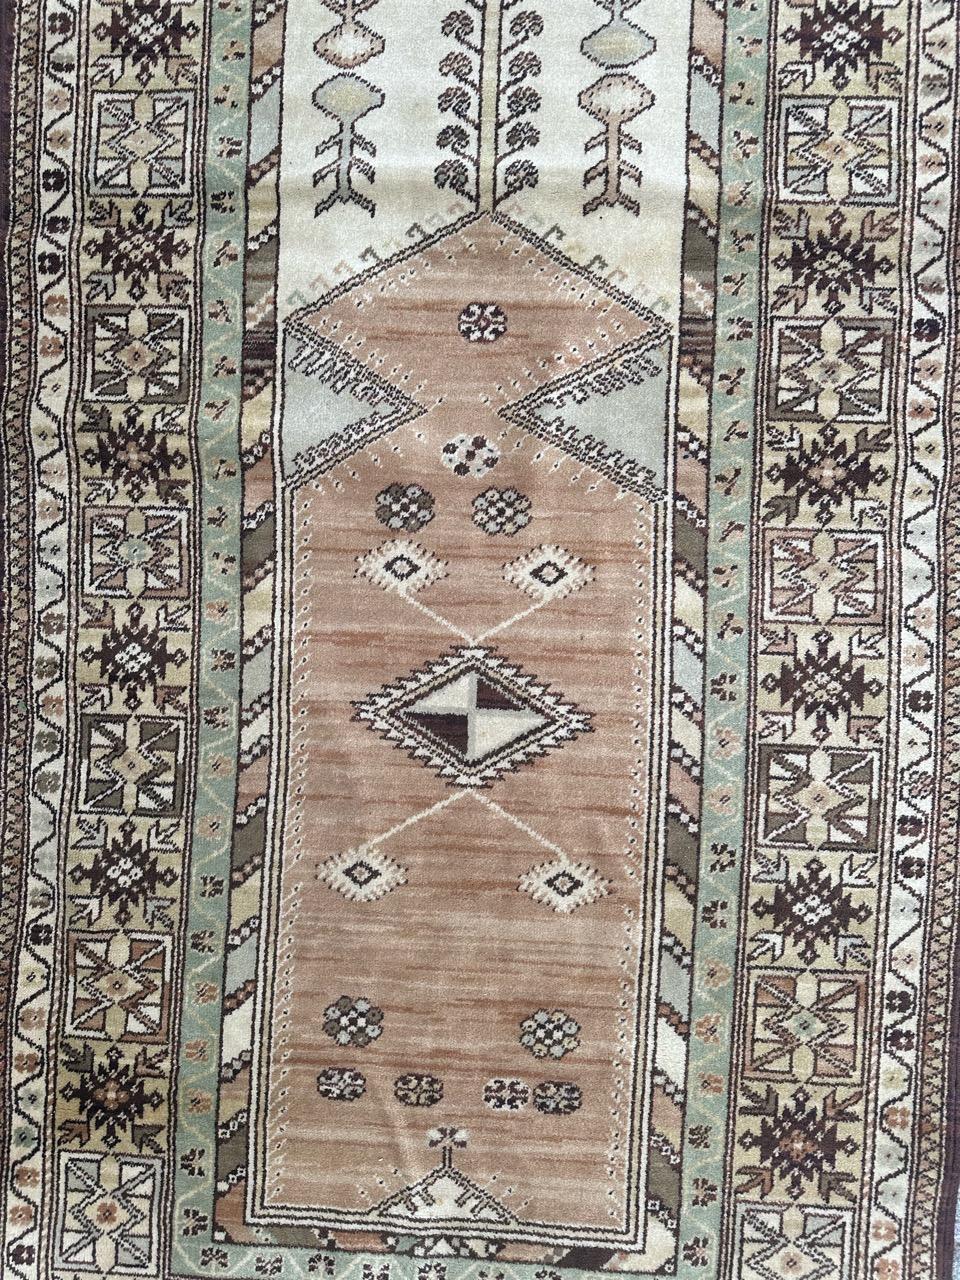 Hübscher türkischer Vintage-Teppich mit geometrischem Muster und schönen hellen Farben, hergestellt auf mechanischen Webstühlen mit Wolle auf Baumwollbasis 

✨✨✨
